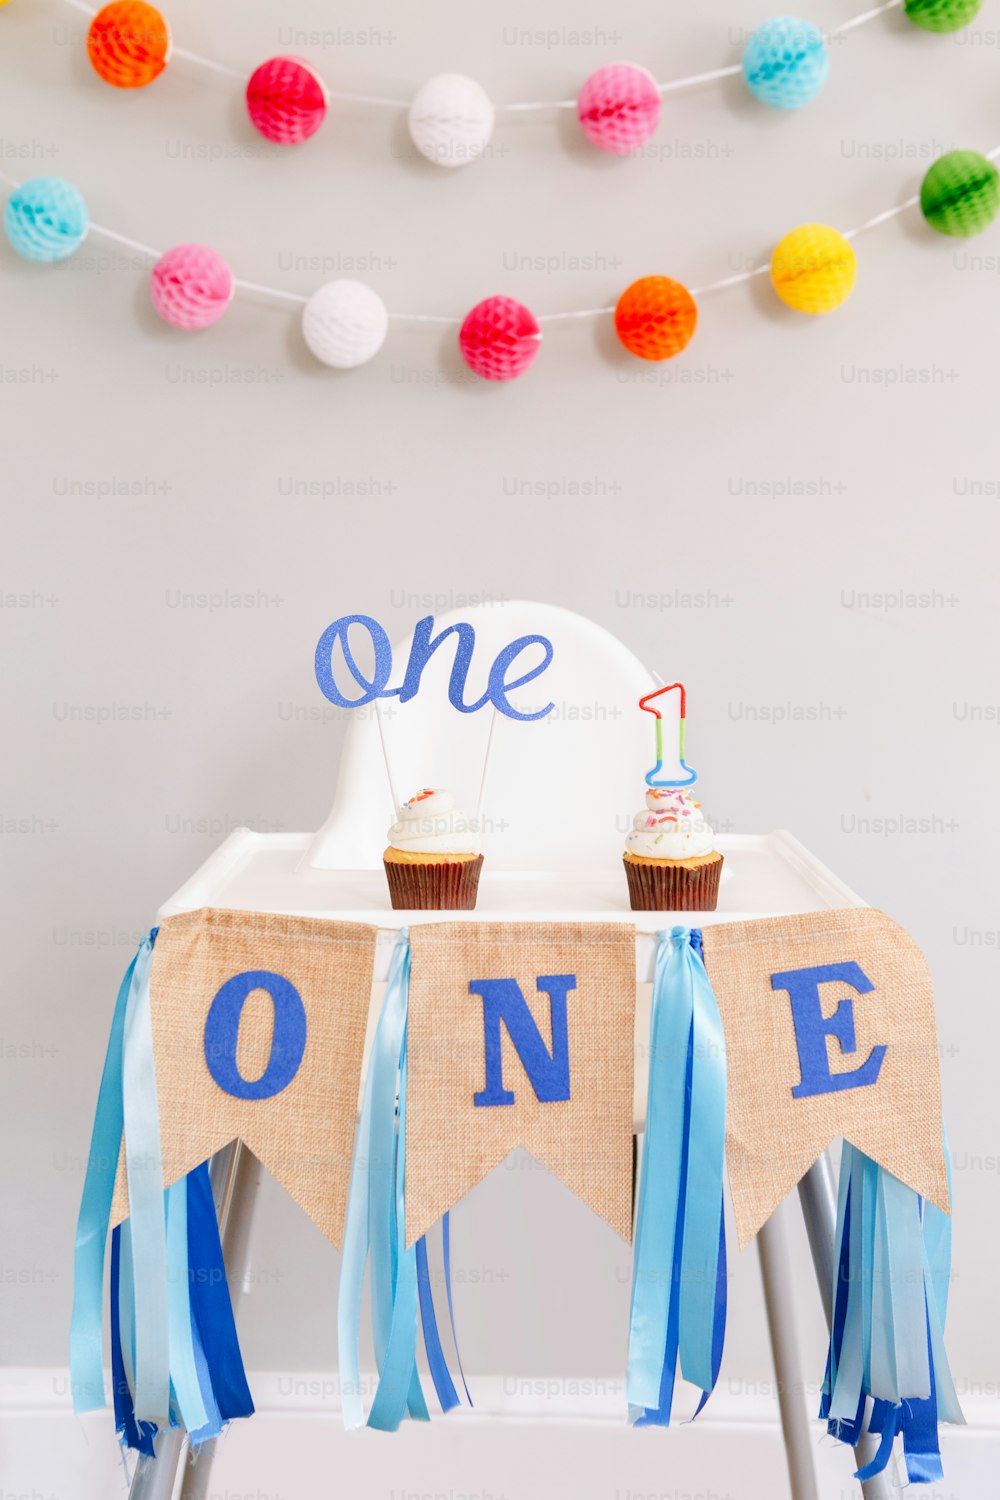 Decoración de fondo festivo para la celebración del cumpleaños. Letras de texto una y una vela en pequeños cupcakes para el cumpleaños del bebé. Decoración de guirnalda en el fondo. Cake smash primer año.